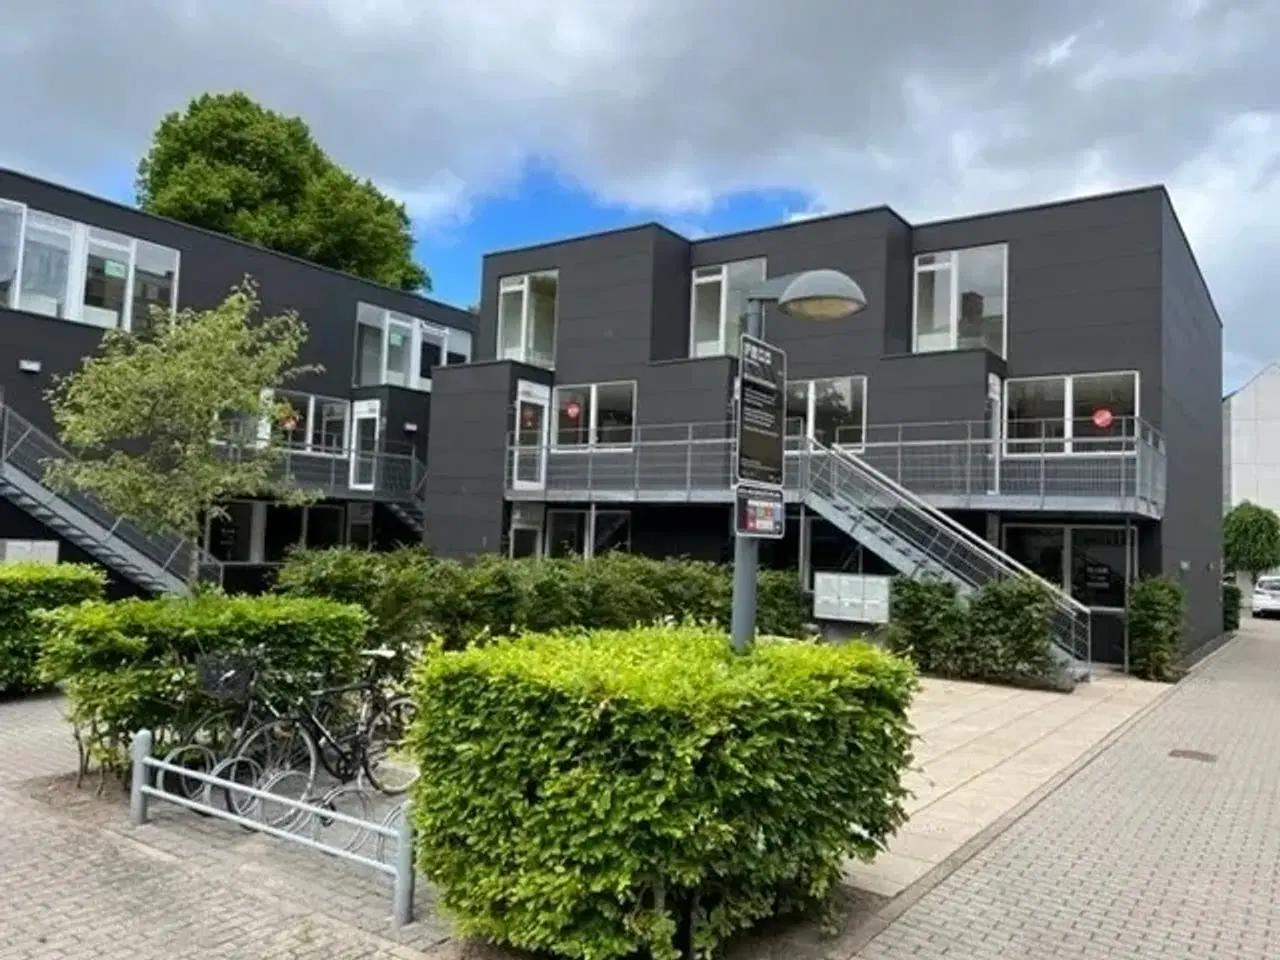 Billede 1 - Aalborg city - Spændende beliggenhed i roligt område nær grønne arealer